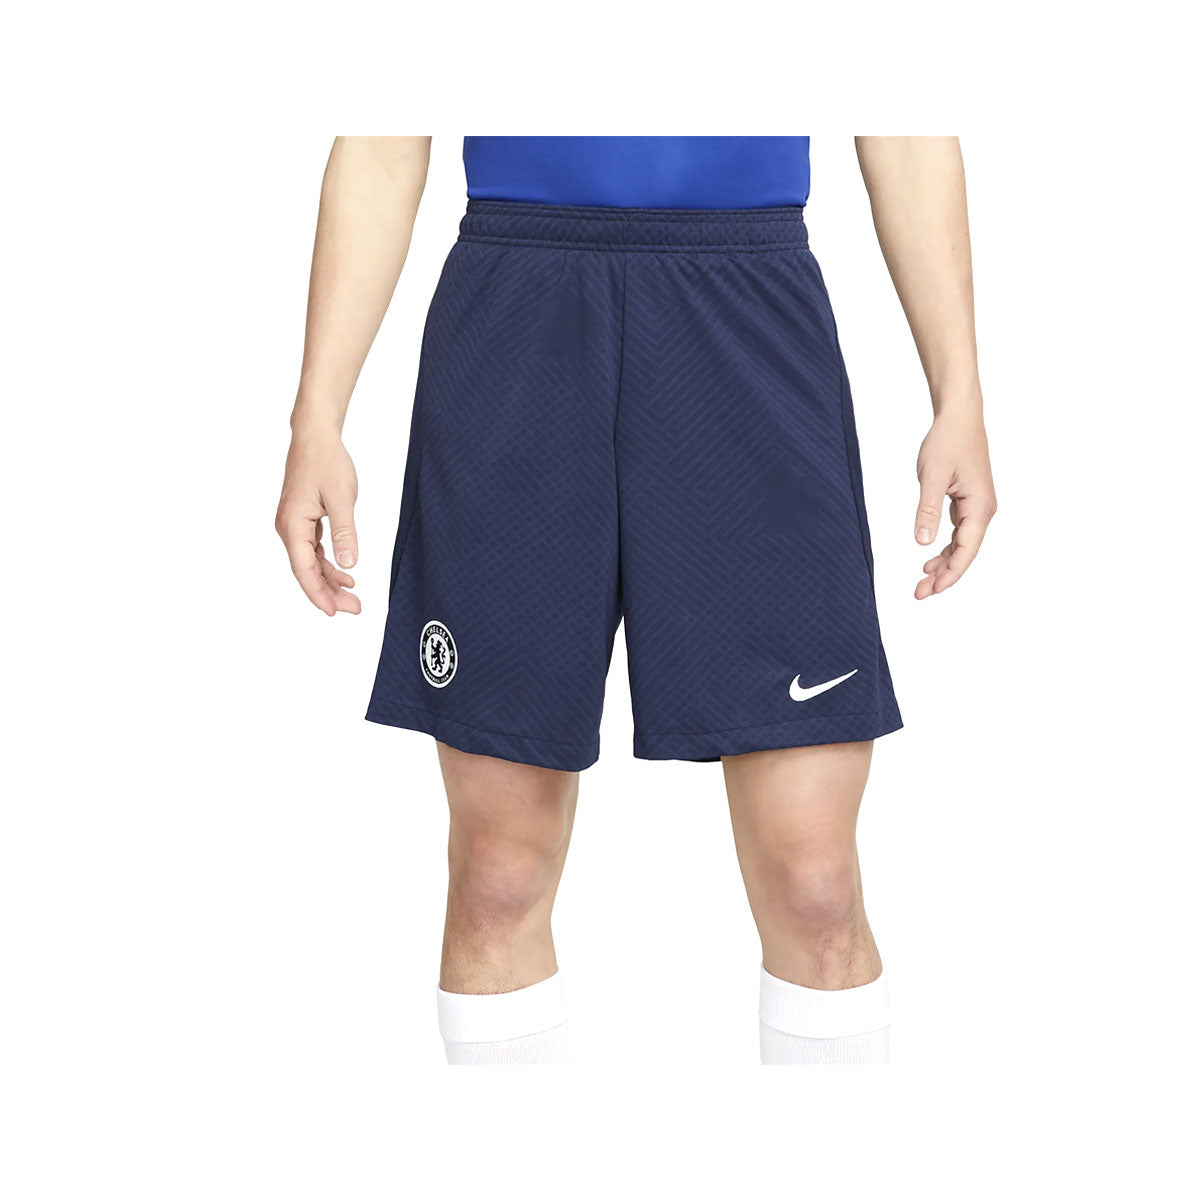 Nike Men's Football Shorts Chelsea Strike